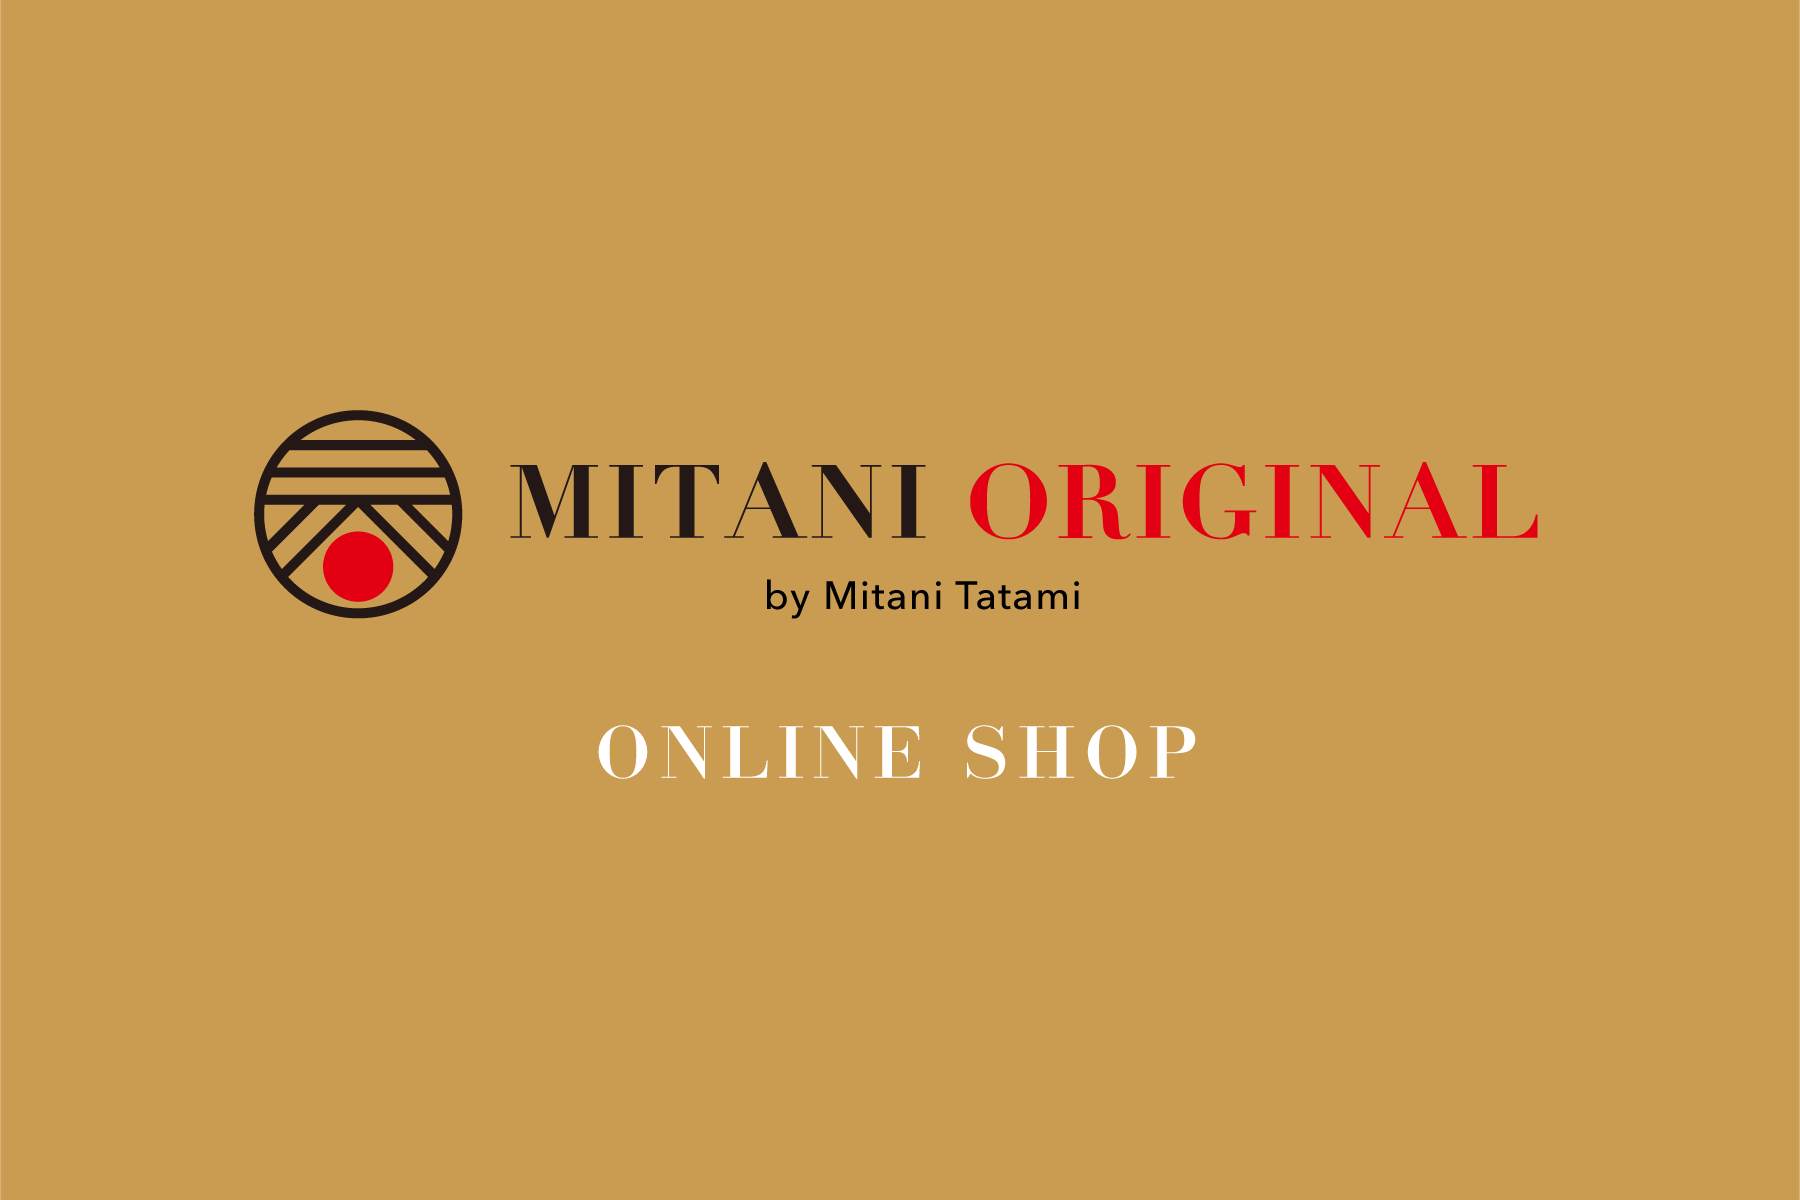 MITANI ORIGINAL by Mitani Tatami